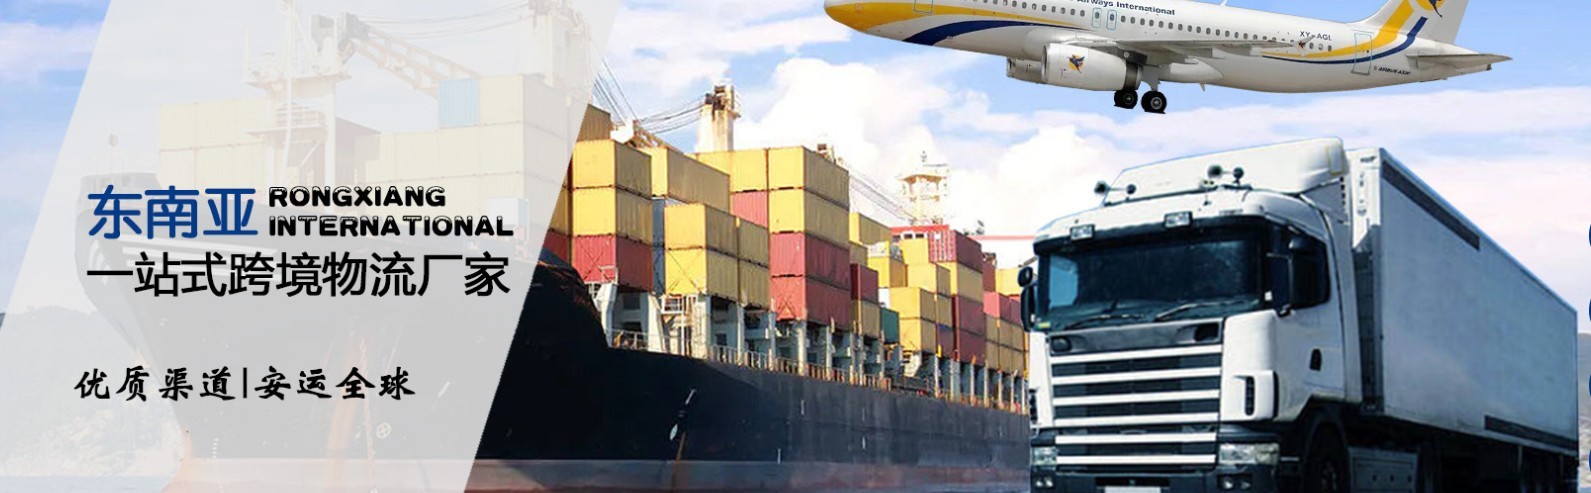 新加坡拼箱价格 新加坡海运代理 新加坡散货拼箱价格 新加坡船期查询国际物流货运代理 